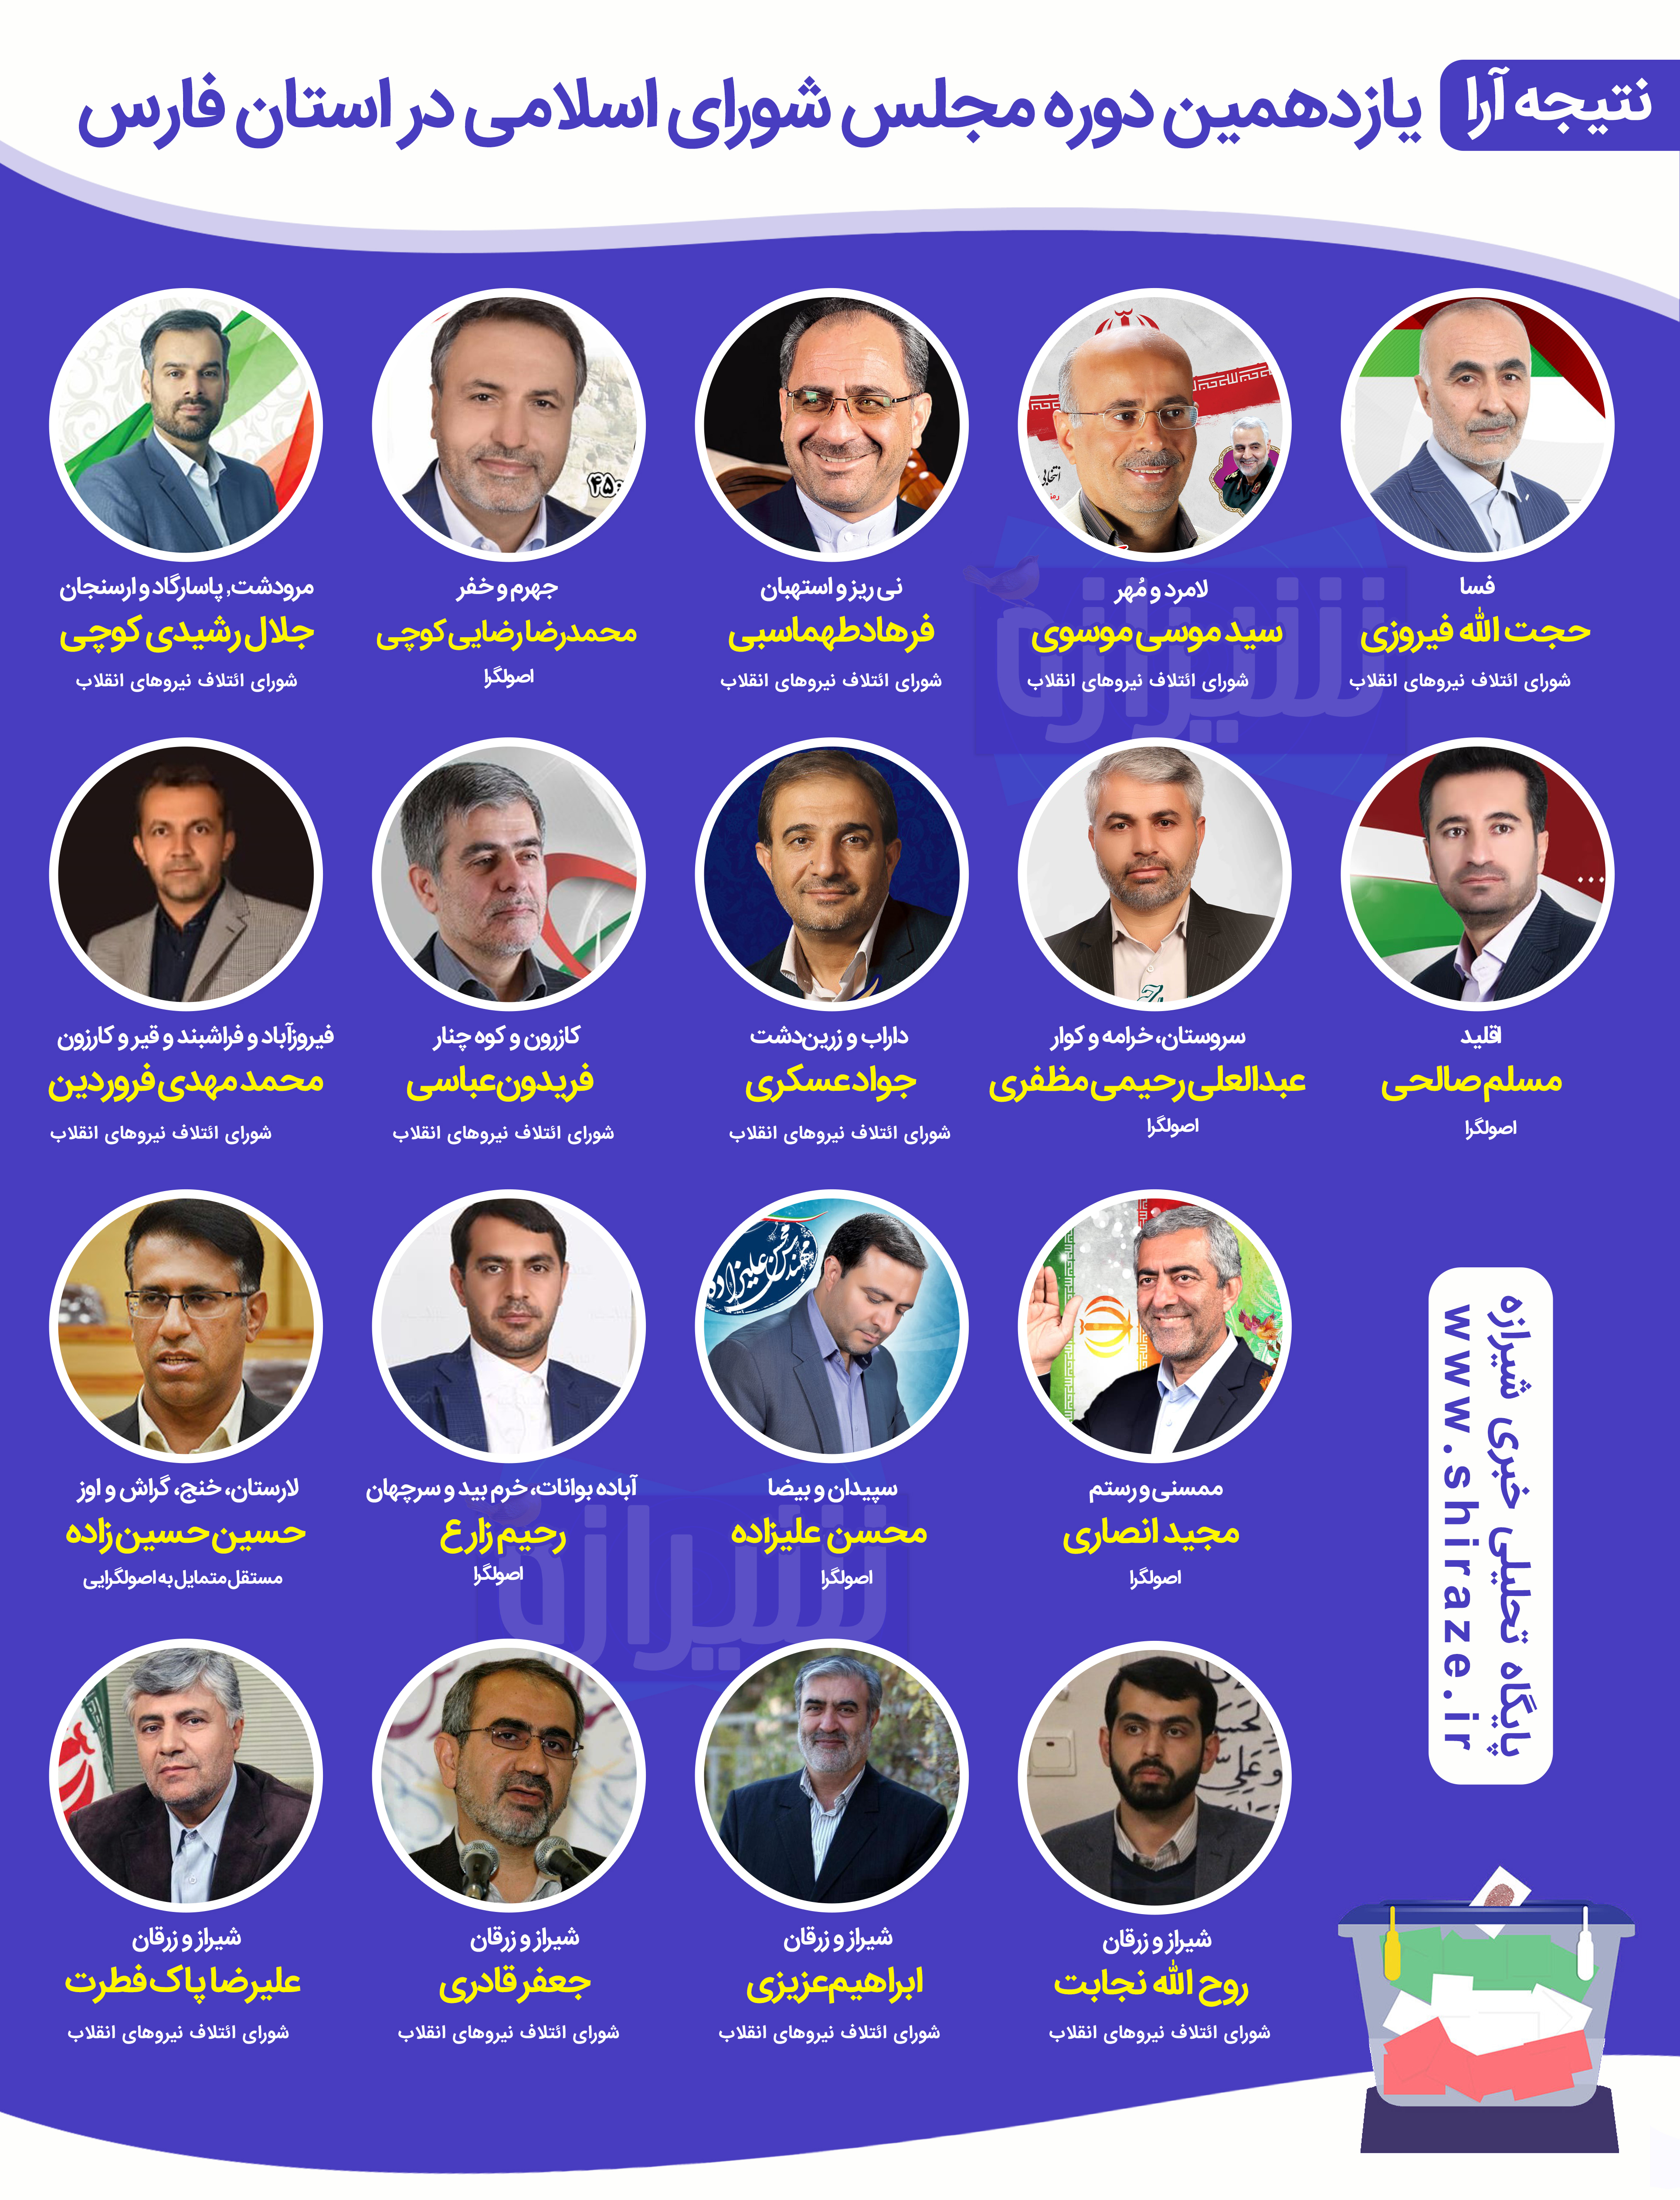 ۱۵ نماینده منتخب از ۱۸ نماینده منتخب استان فارس در مجلس یازدهم از فهرست 